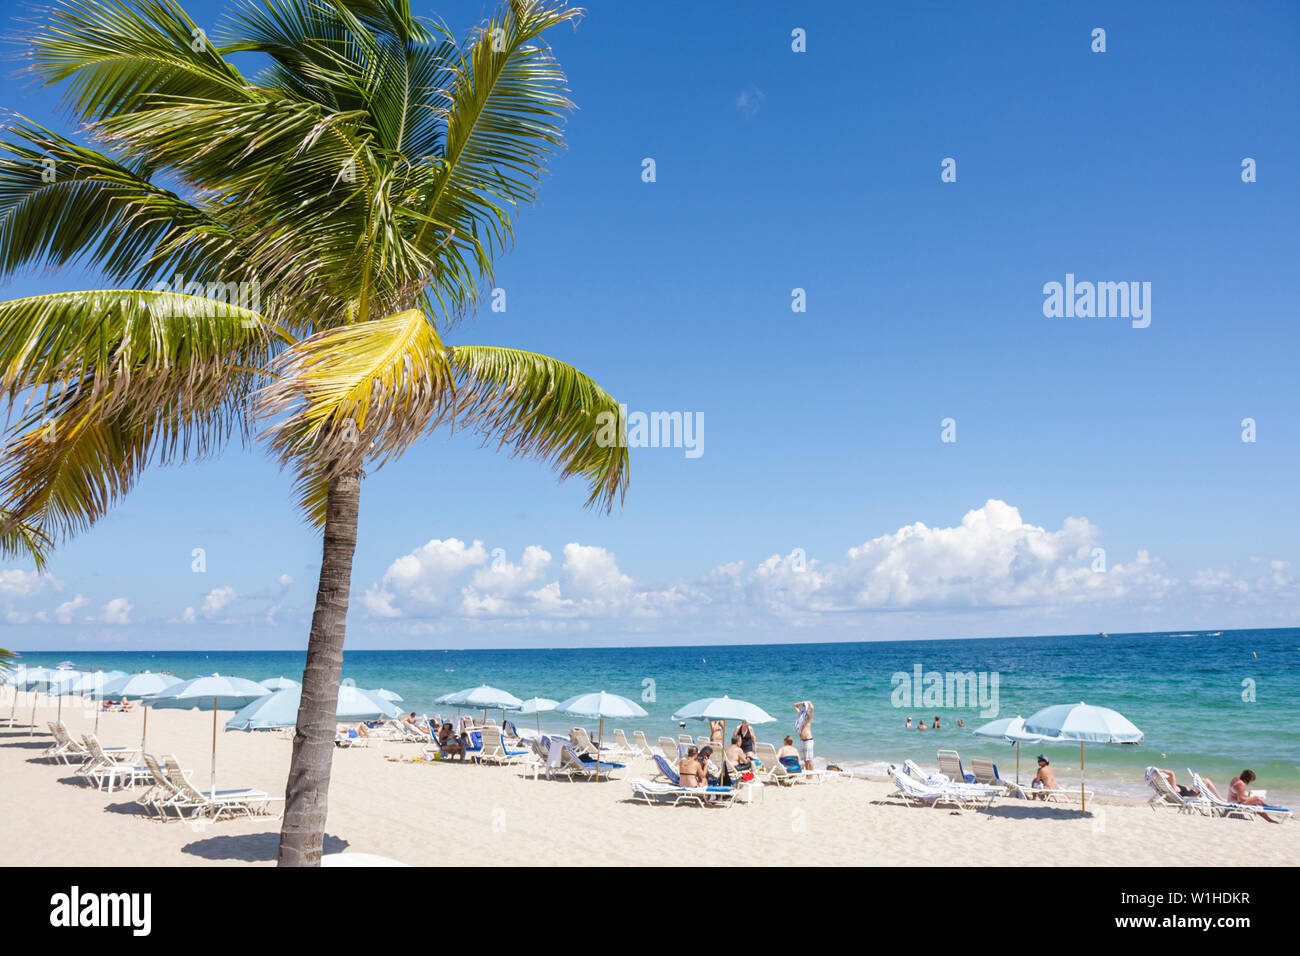 Fort ft. Lauderdale Florida Beach, North Atlantic Avenue, A1A, spiaggia pubblica, palme, ombrello, poltrona, oceano, costa, sabbia, tempo libero, surf, FL09101010103 Foto Stock